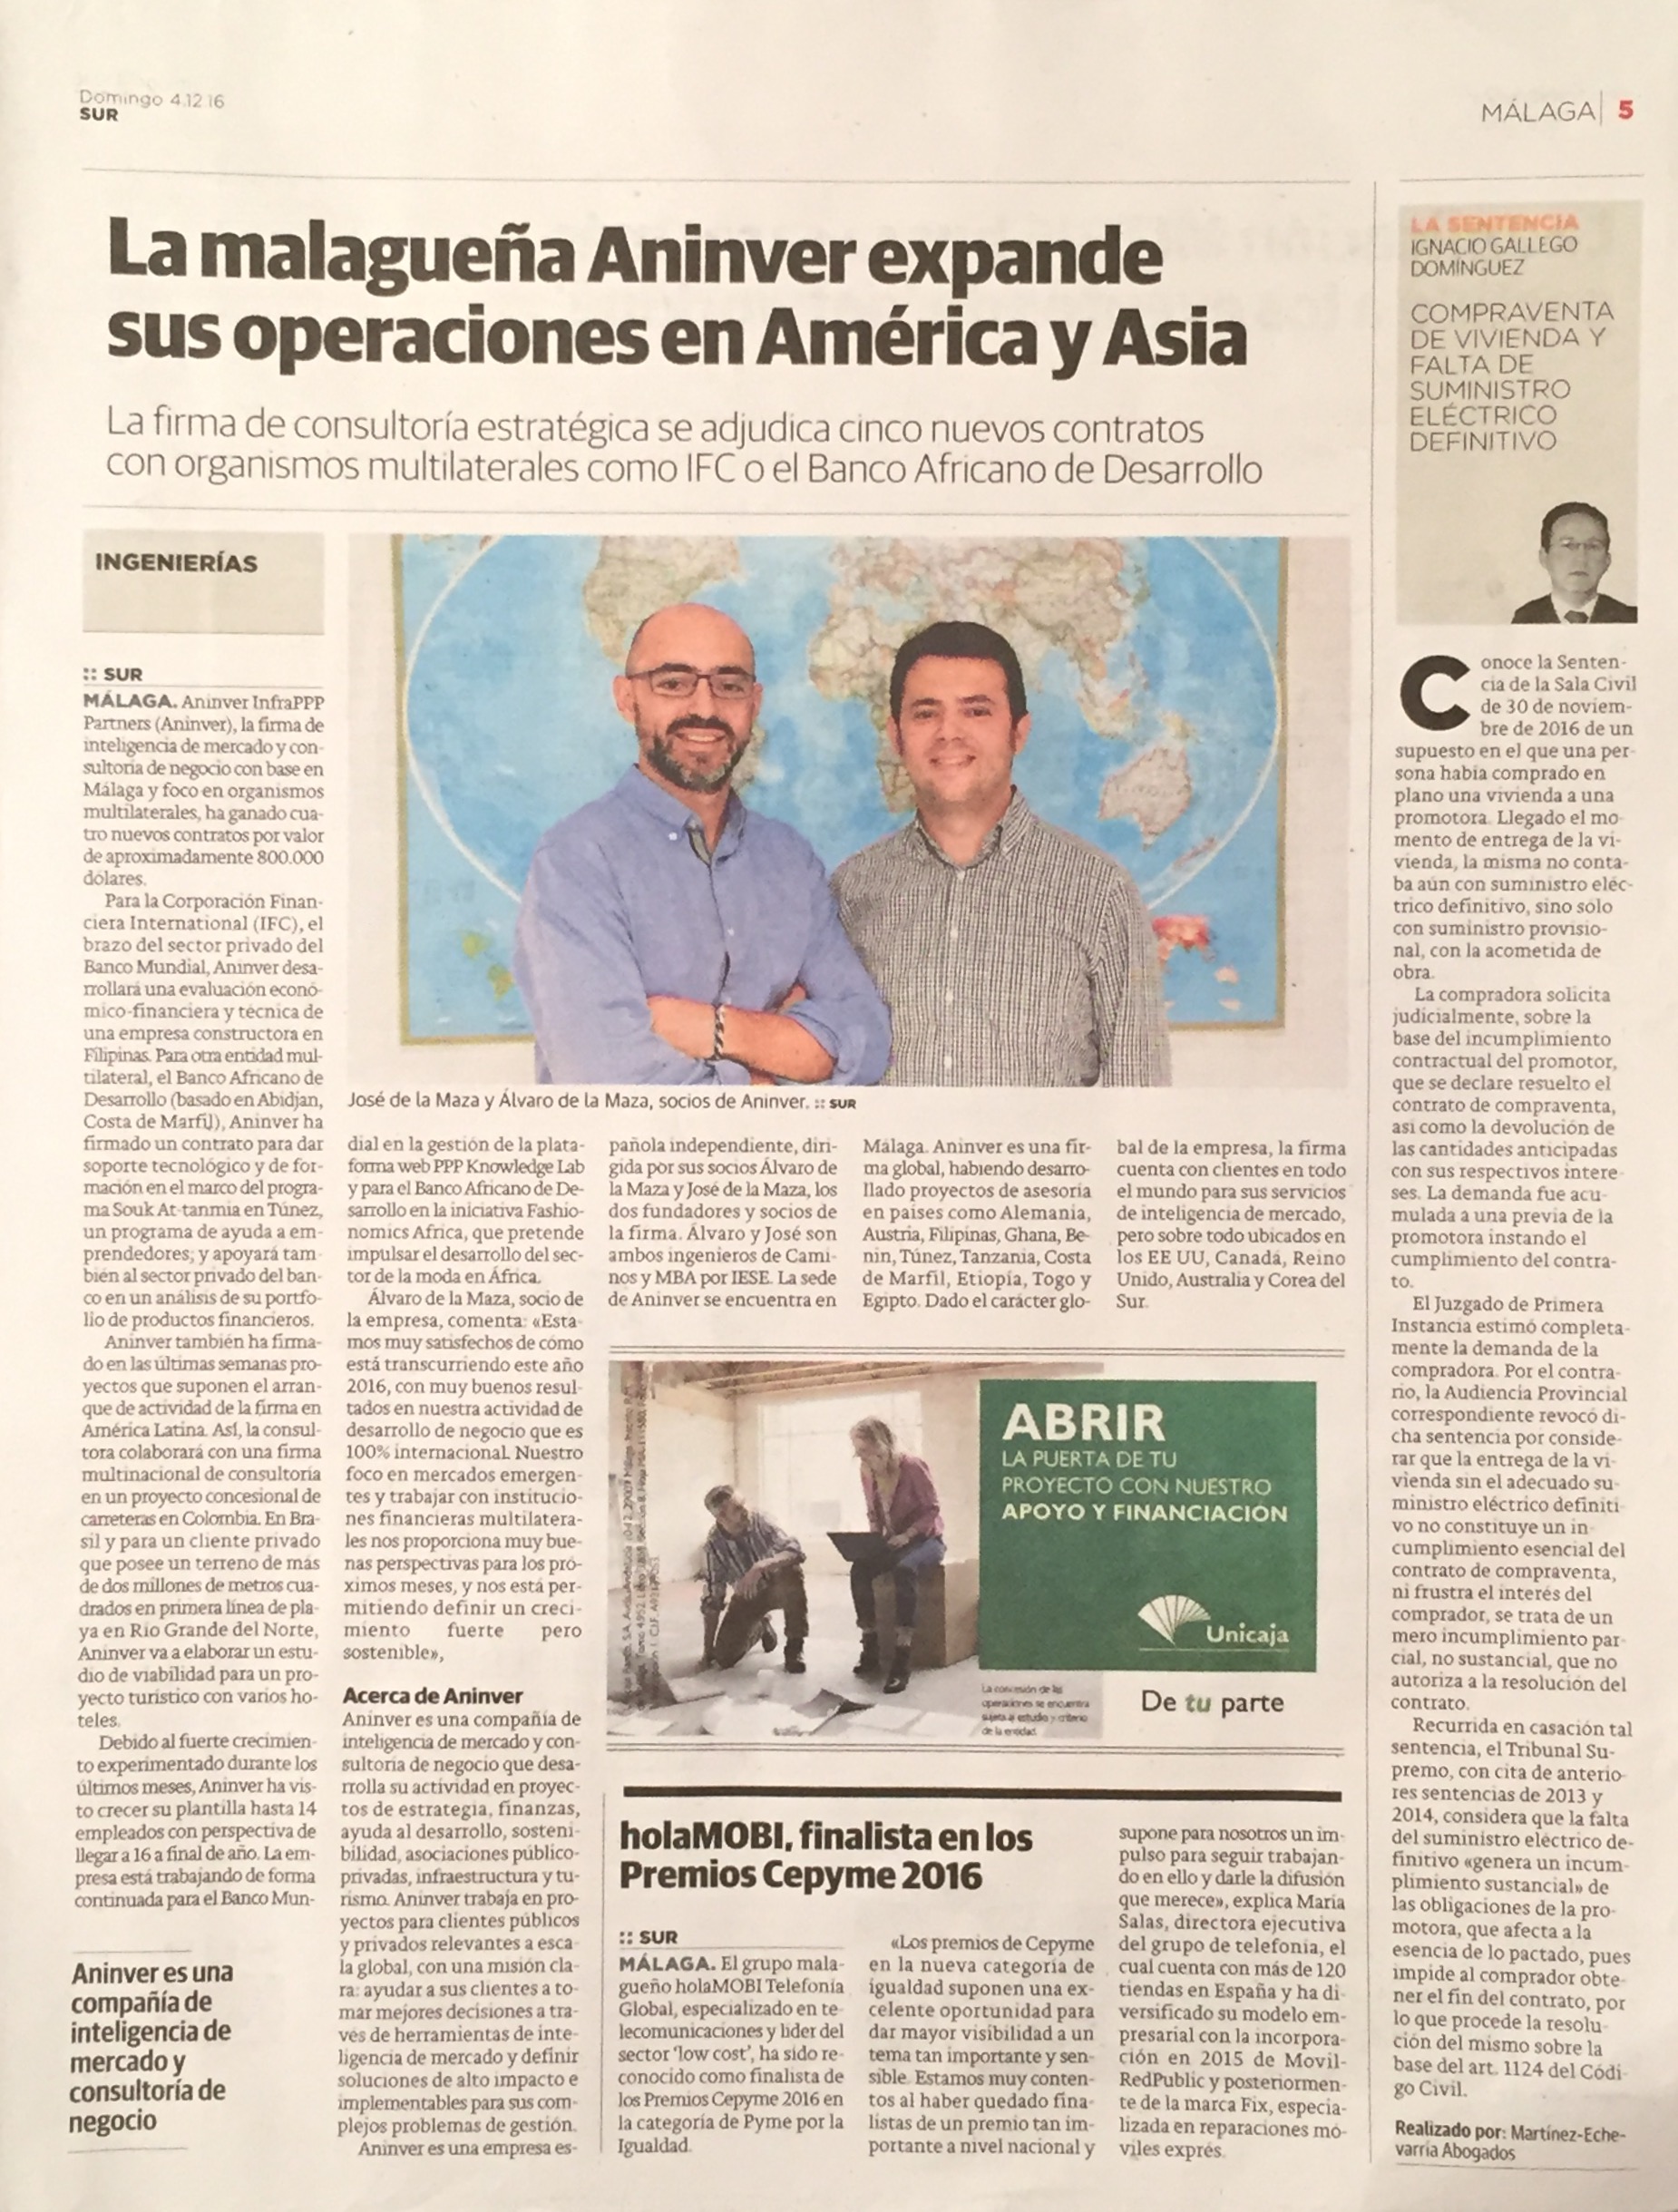 Diario Sur publishes about Aninver